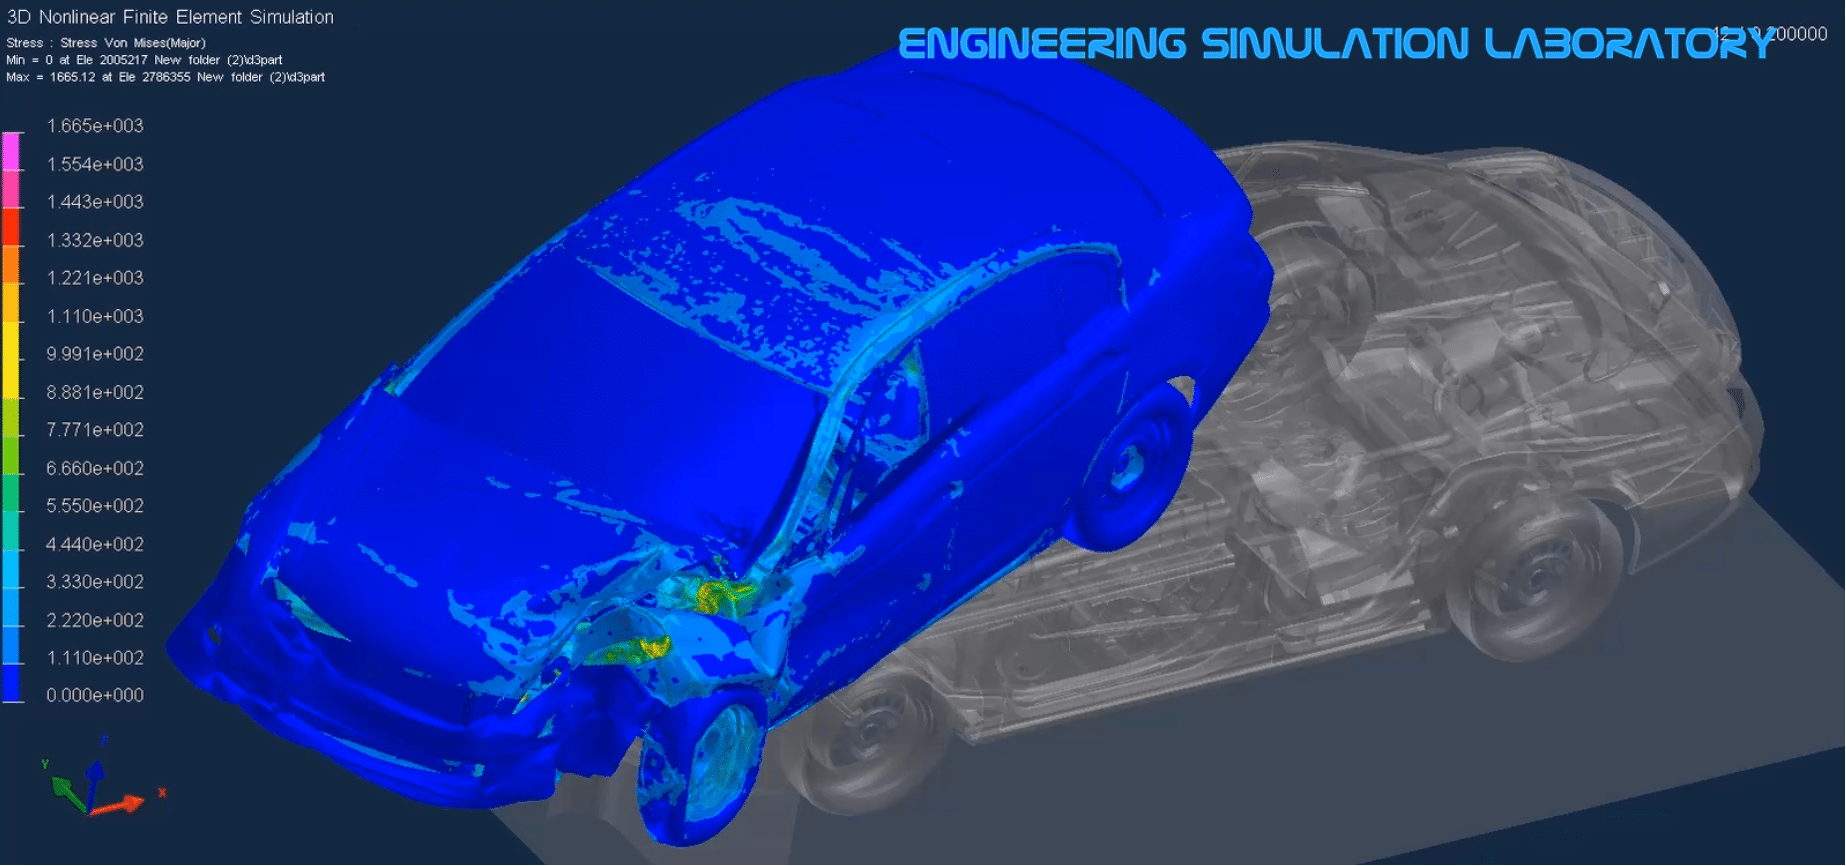 Car and vehicle Finite Element Simulation Crash Test Crashworthiness Ls-Dyna Abaqus PAM-CRASH